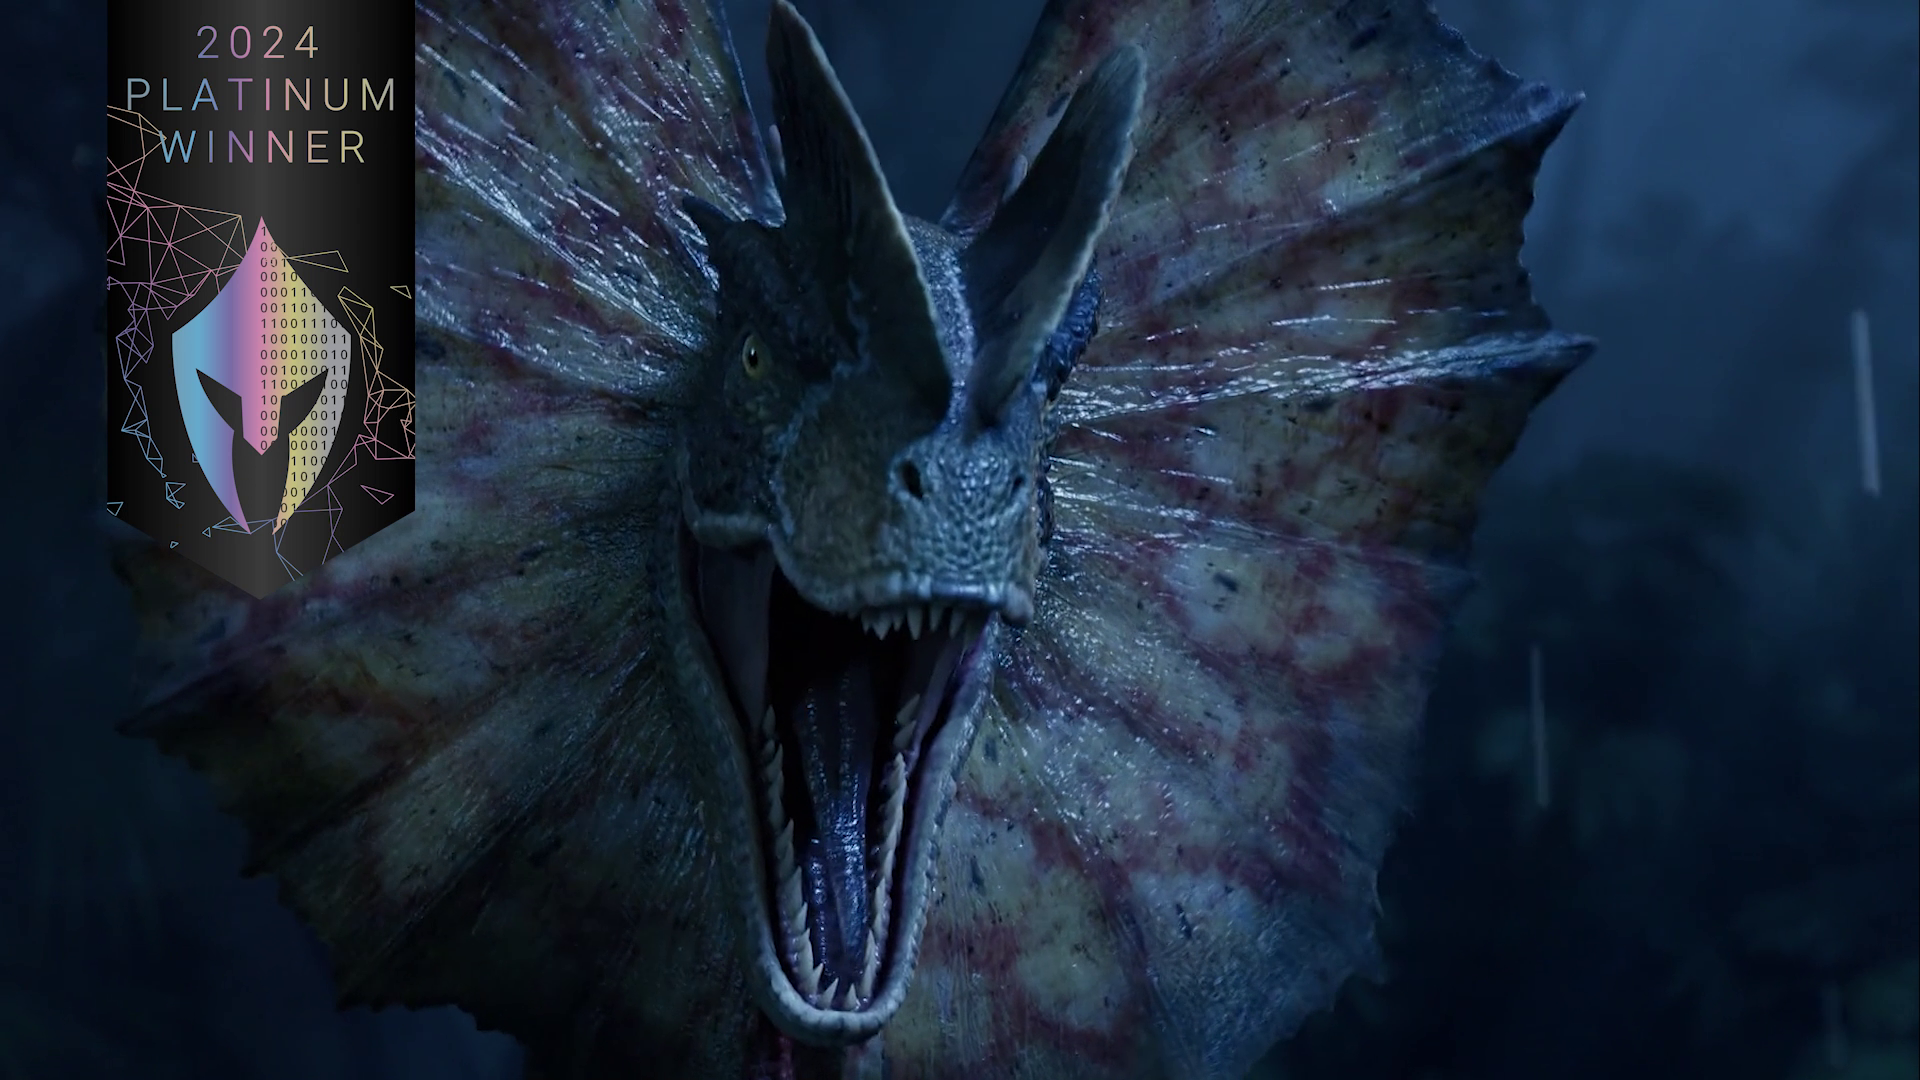 Jurassic Park: Survival Trailer Wins Vega Digital Award